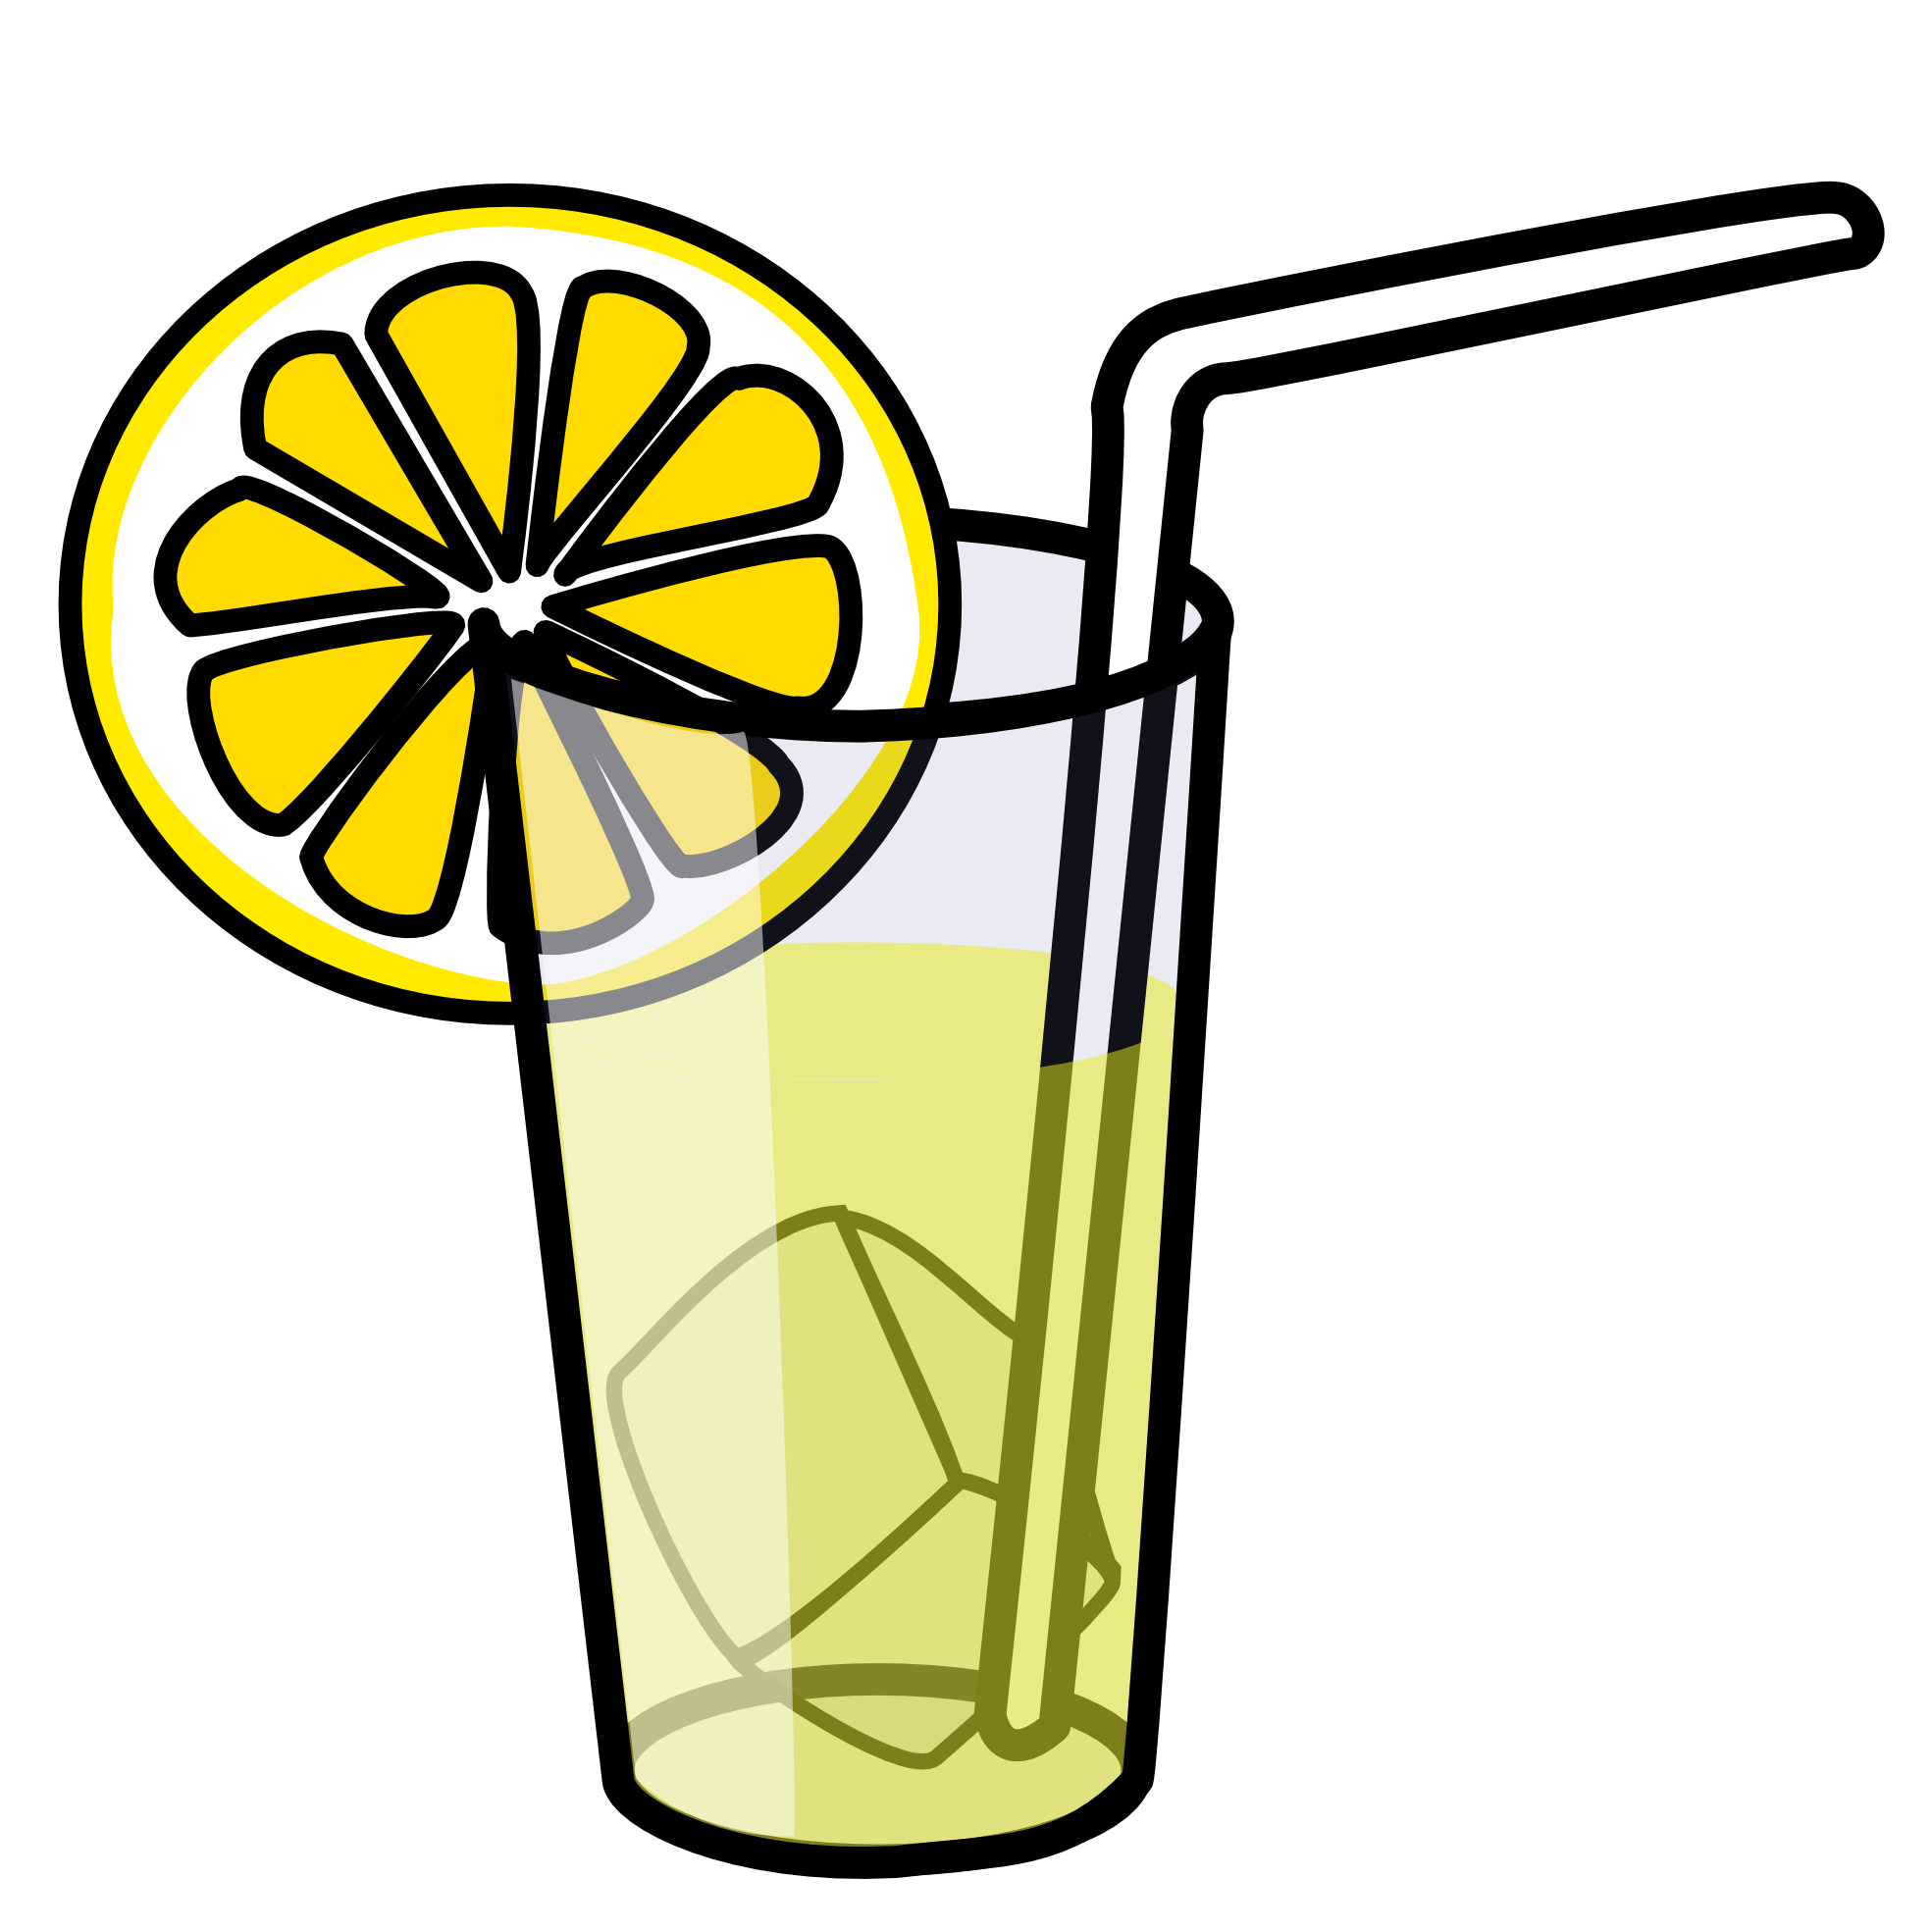 Lemonade cute cartoon